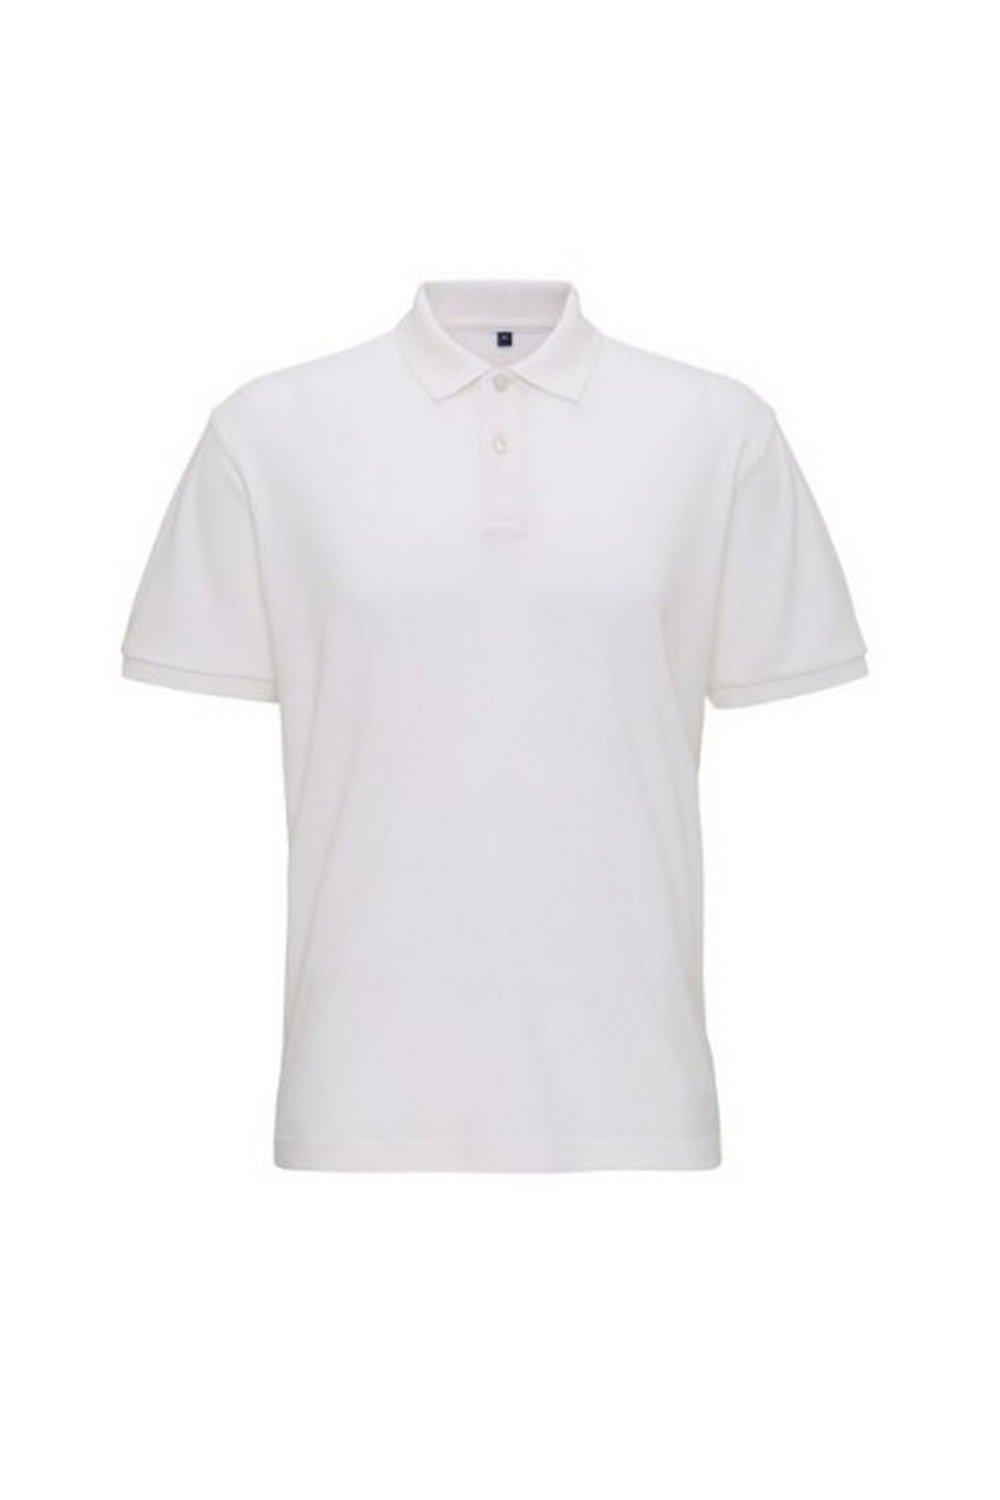 цена Супергладкая трикотажная рубашка-поло Asquith & Fox, белый